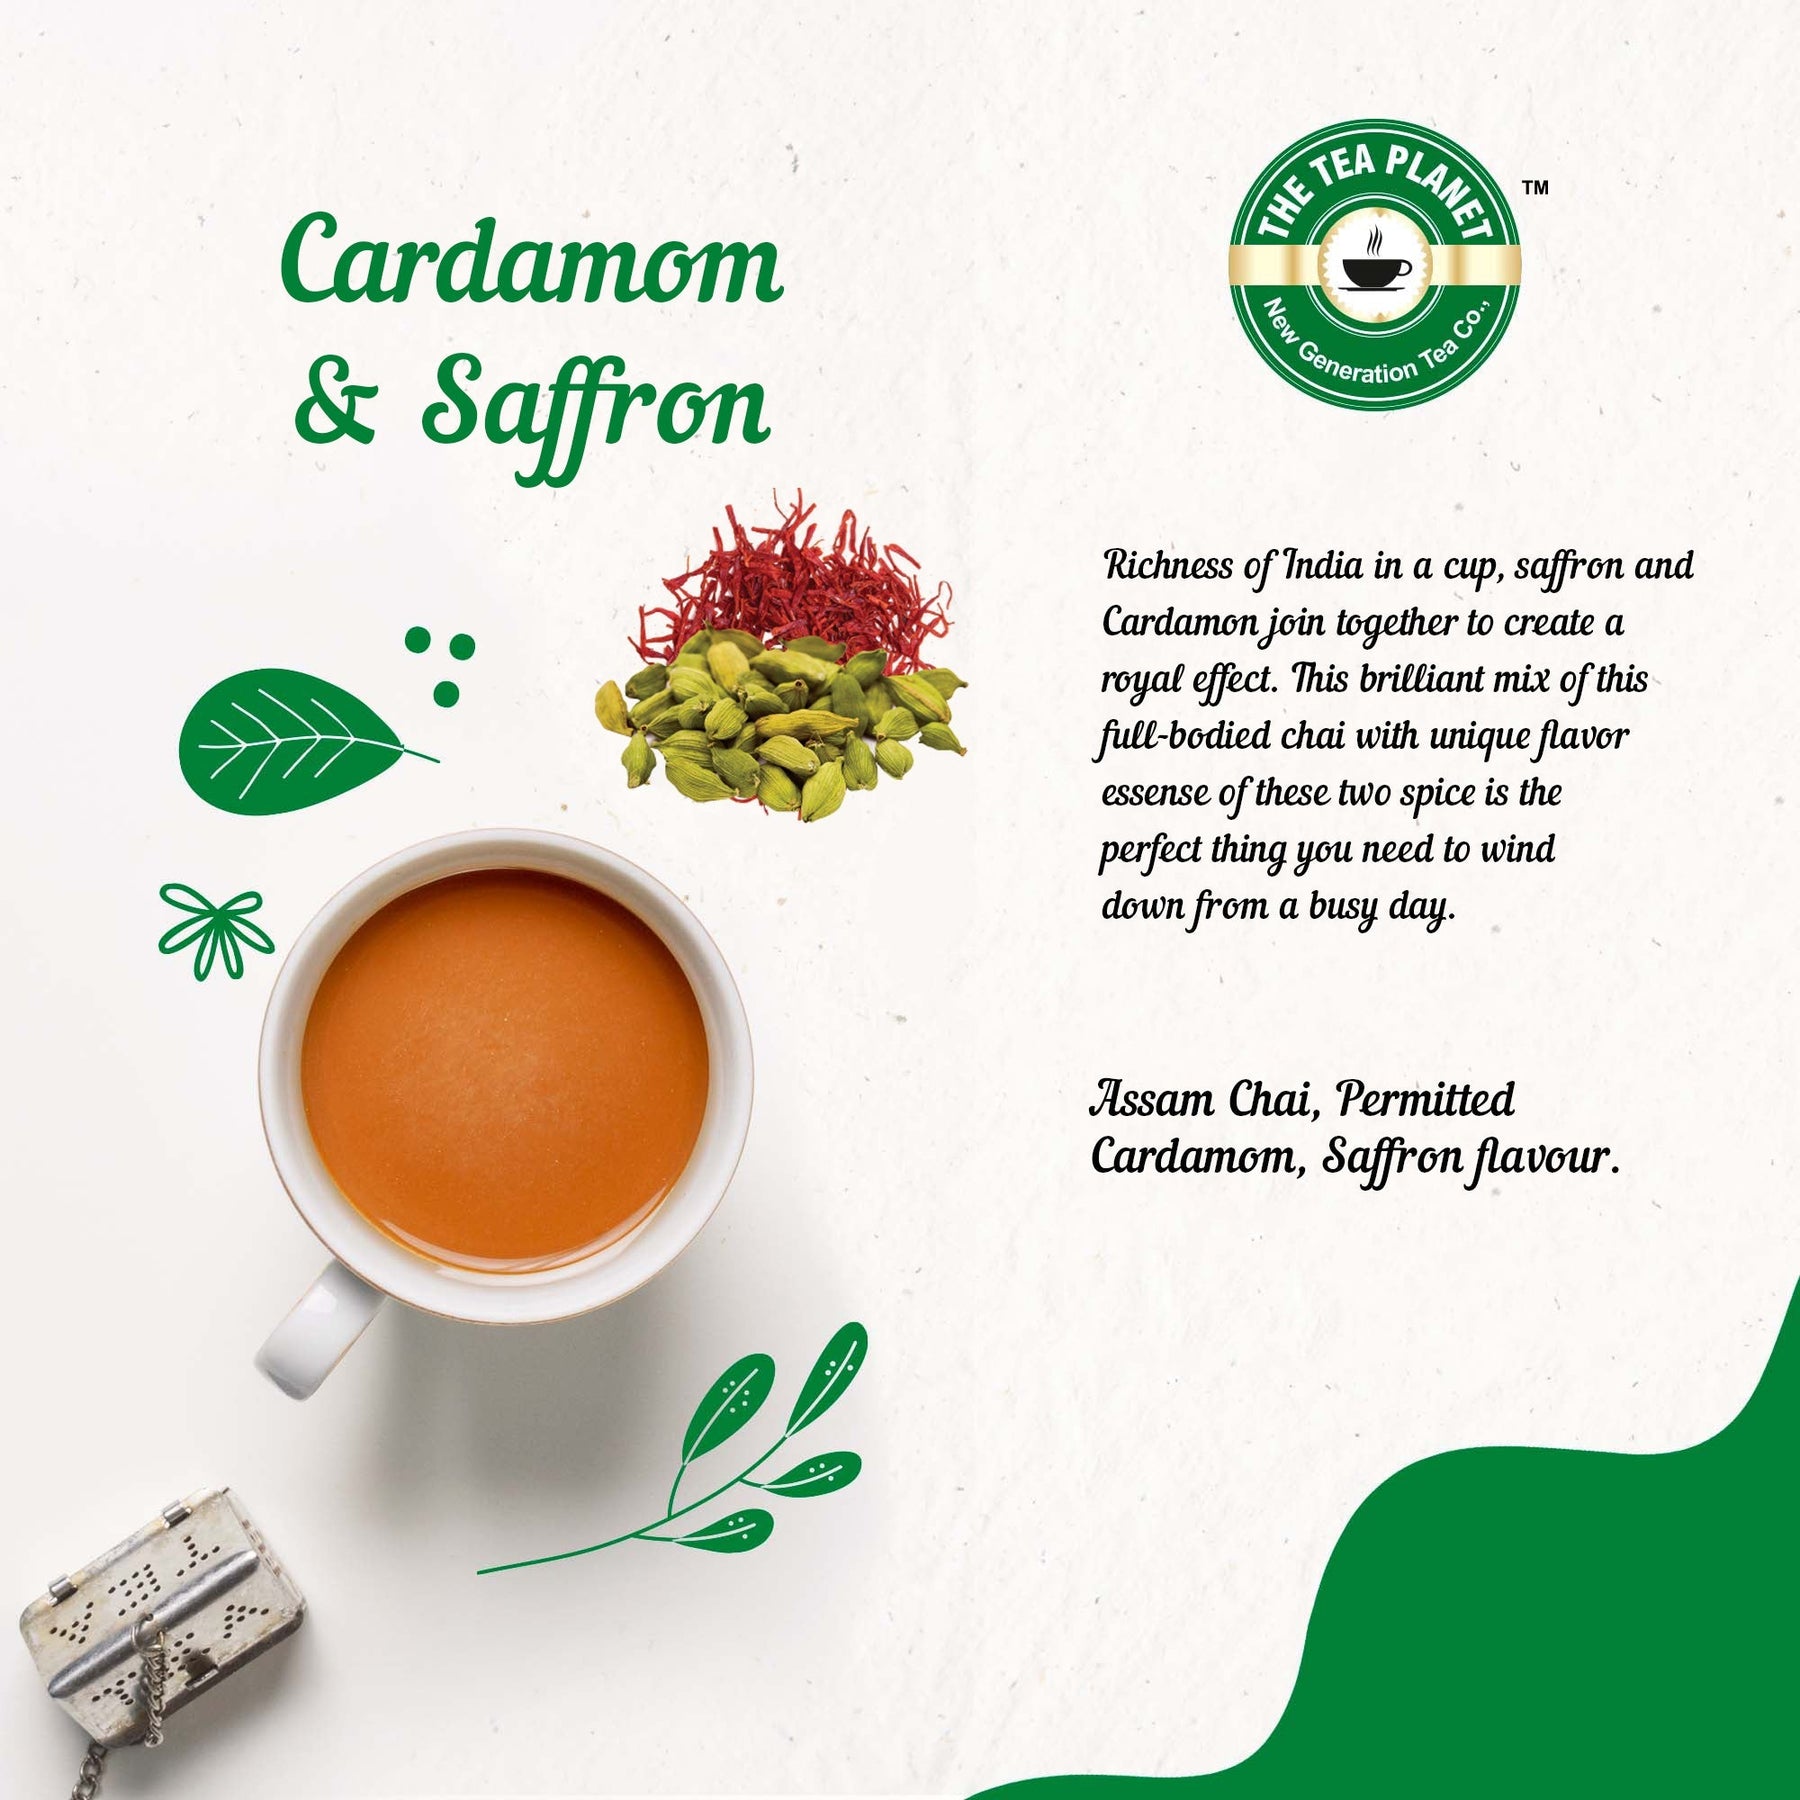 Earl Cardamom & Saffron Flavored CTC Tea 3